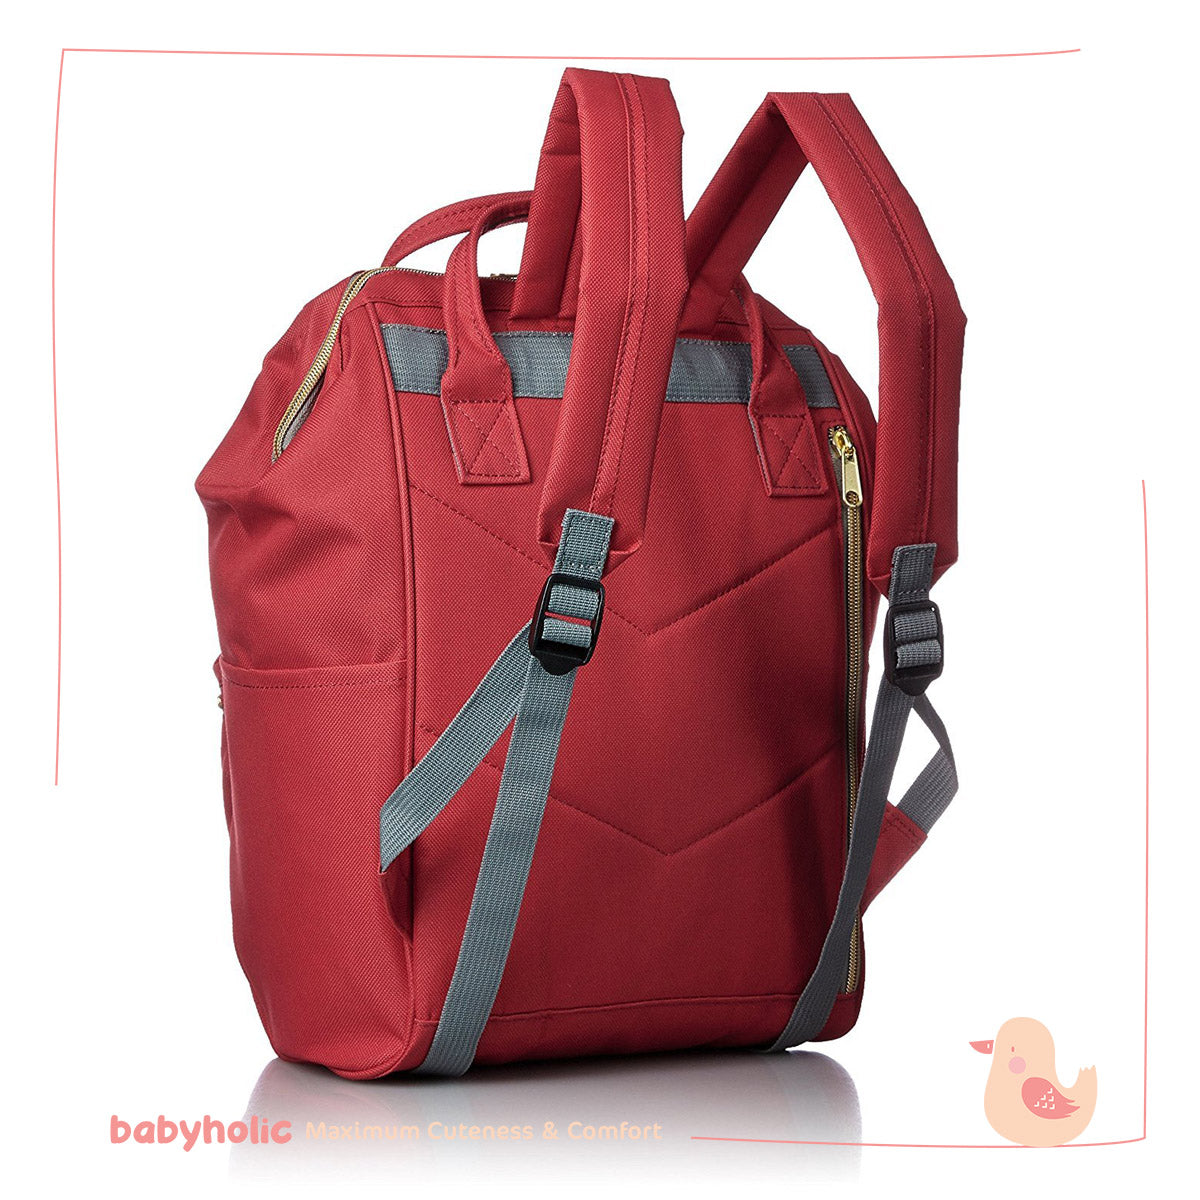 Anello Maternity Bag